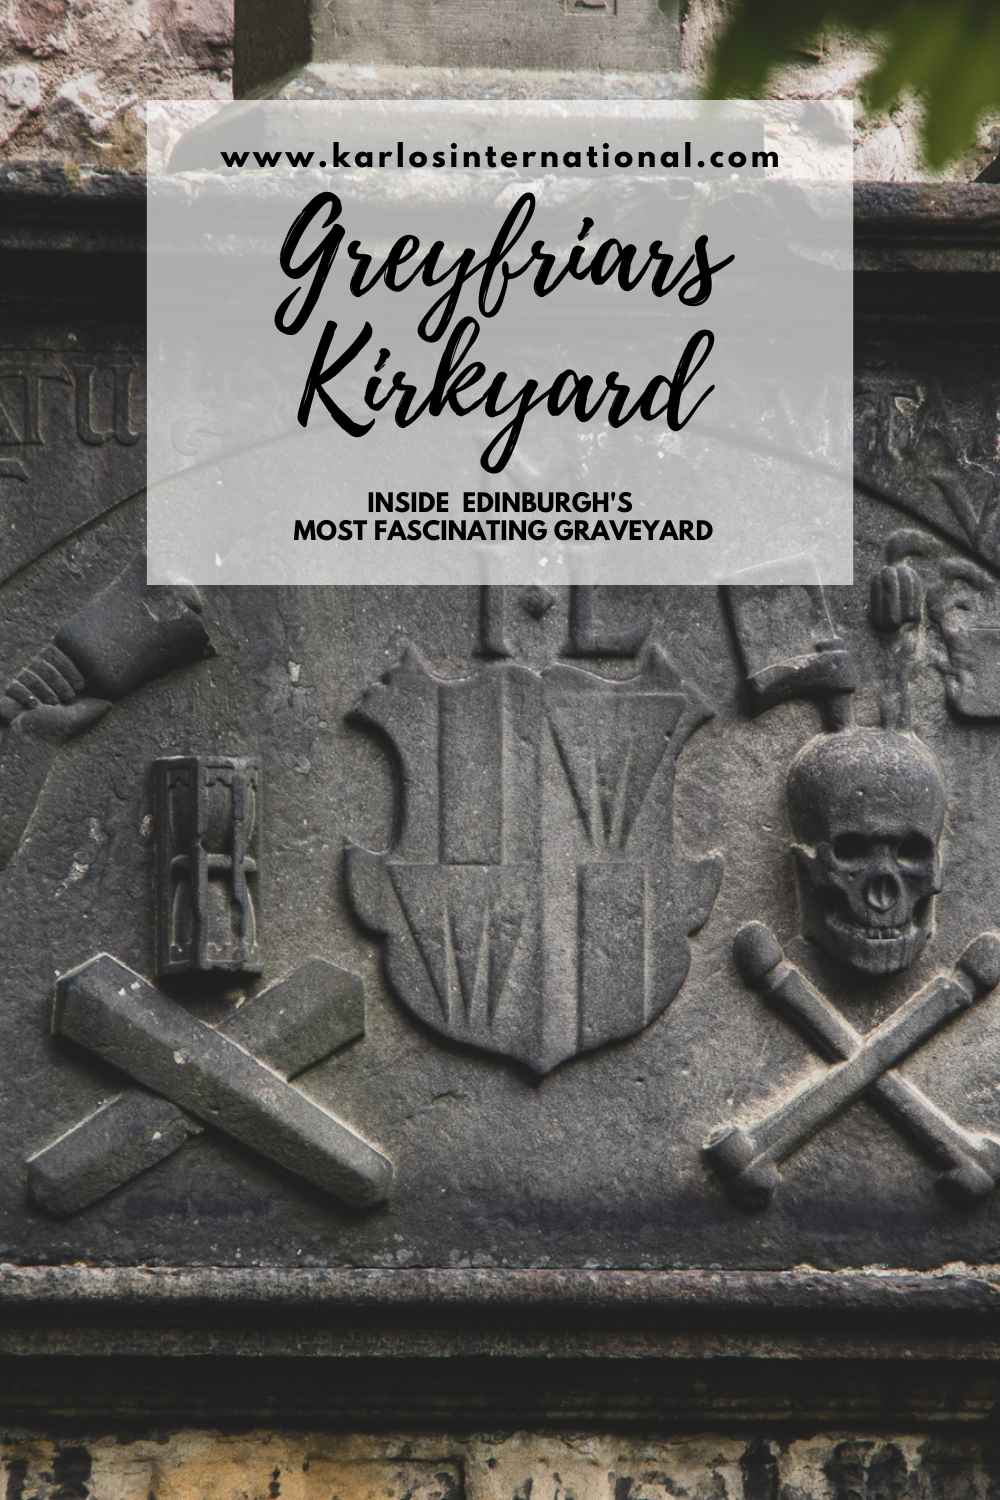 Greyfriars Kirkyard Tour - Pinterest Pin